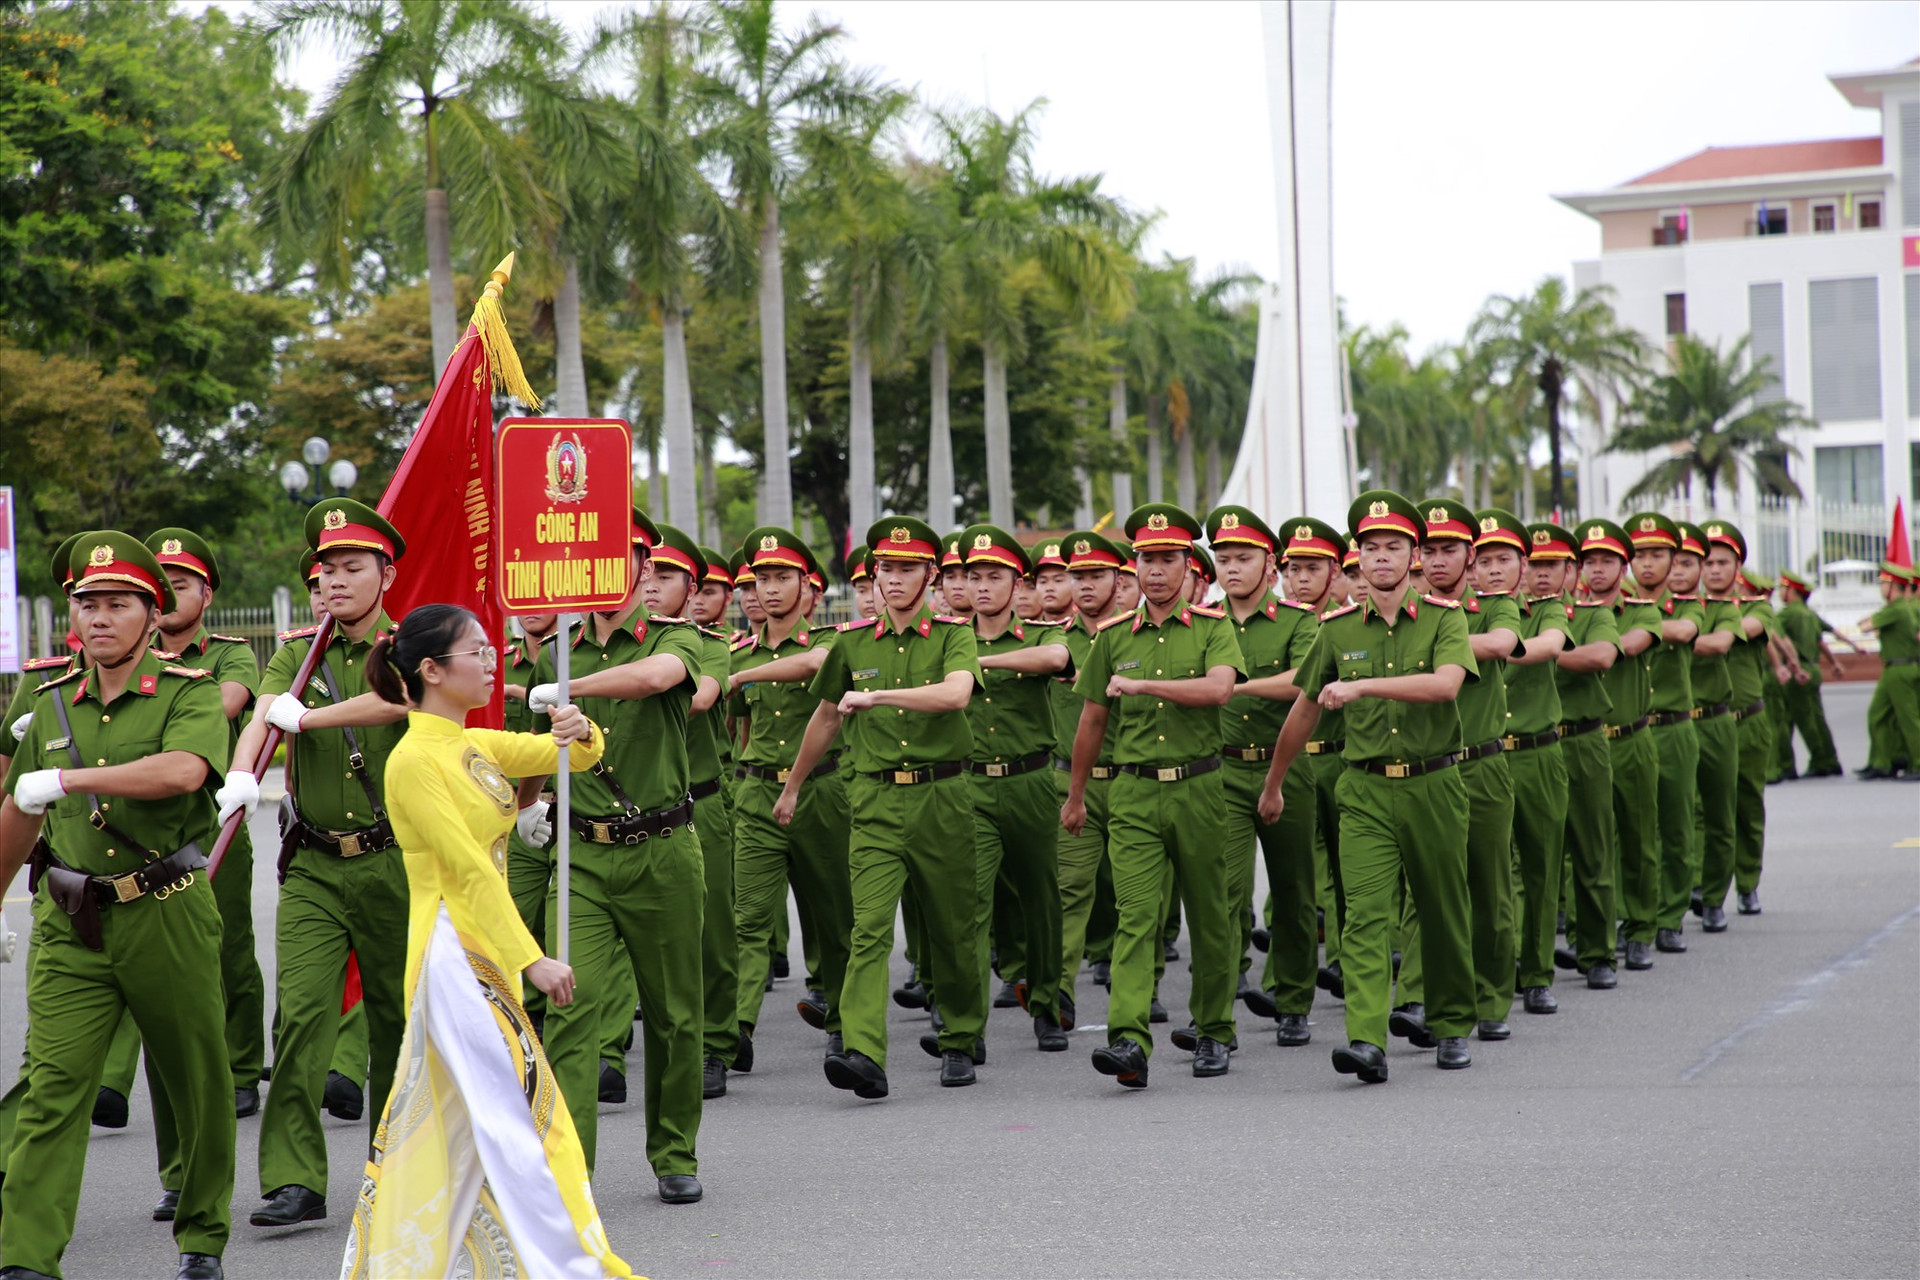 Hội thi có sự tham gia của hơn 700 cán bộ chiến sĩ đến từ công an 9 tỉnh, thành phố từ Quảng Bình đến Khánh Hòa. Ảnh: T.C